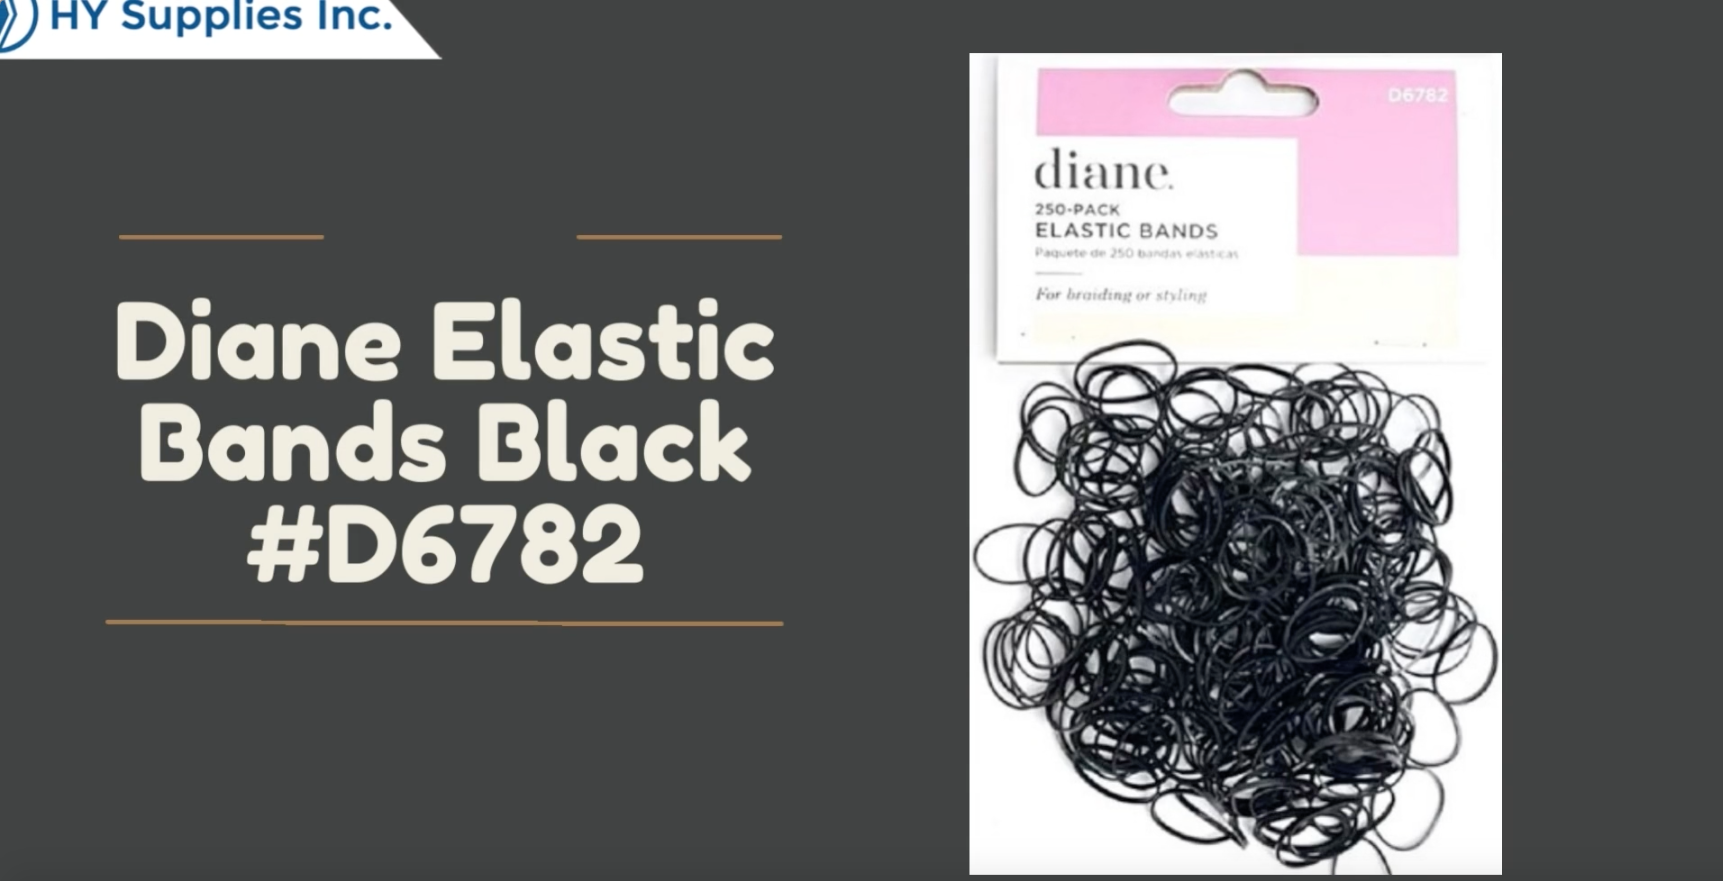 Diane Elastic Bands Black -D6782